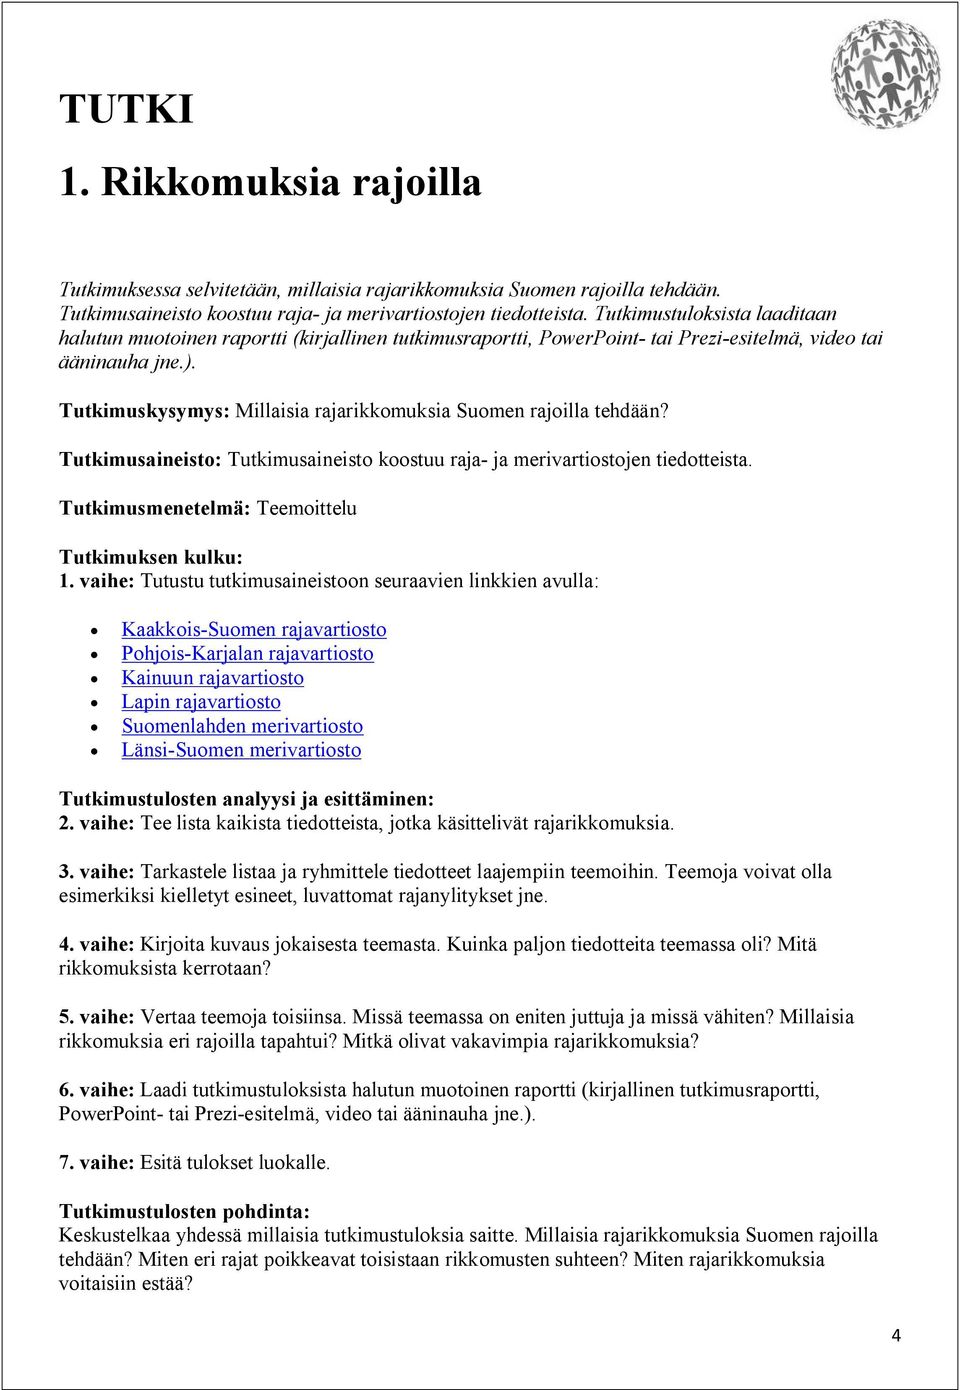 Tutkimuskysymys: Millaisia rajarikkomuksia Suomen rajoilla tehdään? Tutkimusaineisto: Tutkimusaineisto koostuu raja- ja merivartiostojen tiedotteista.